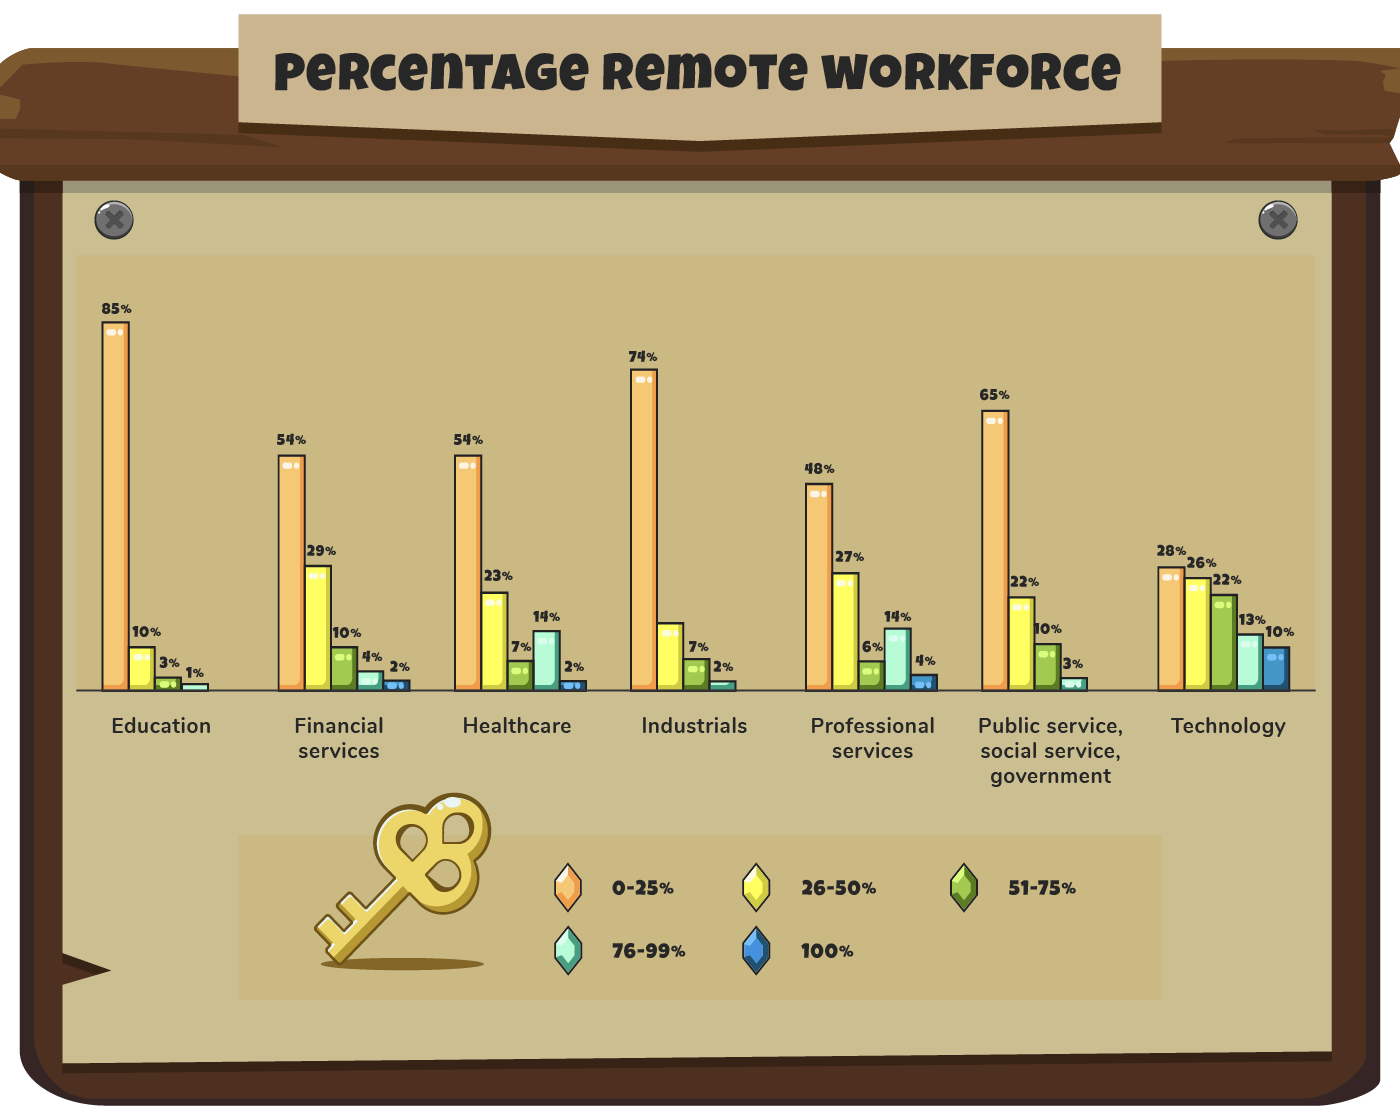 Remote workforce